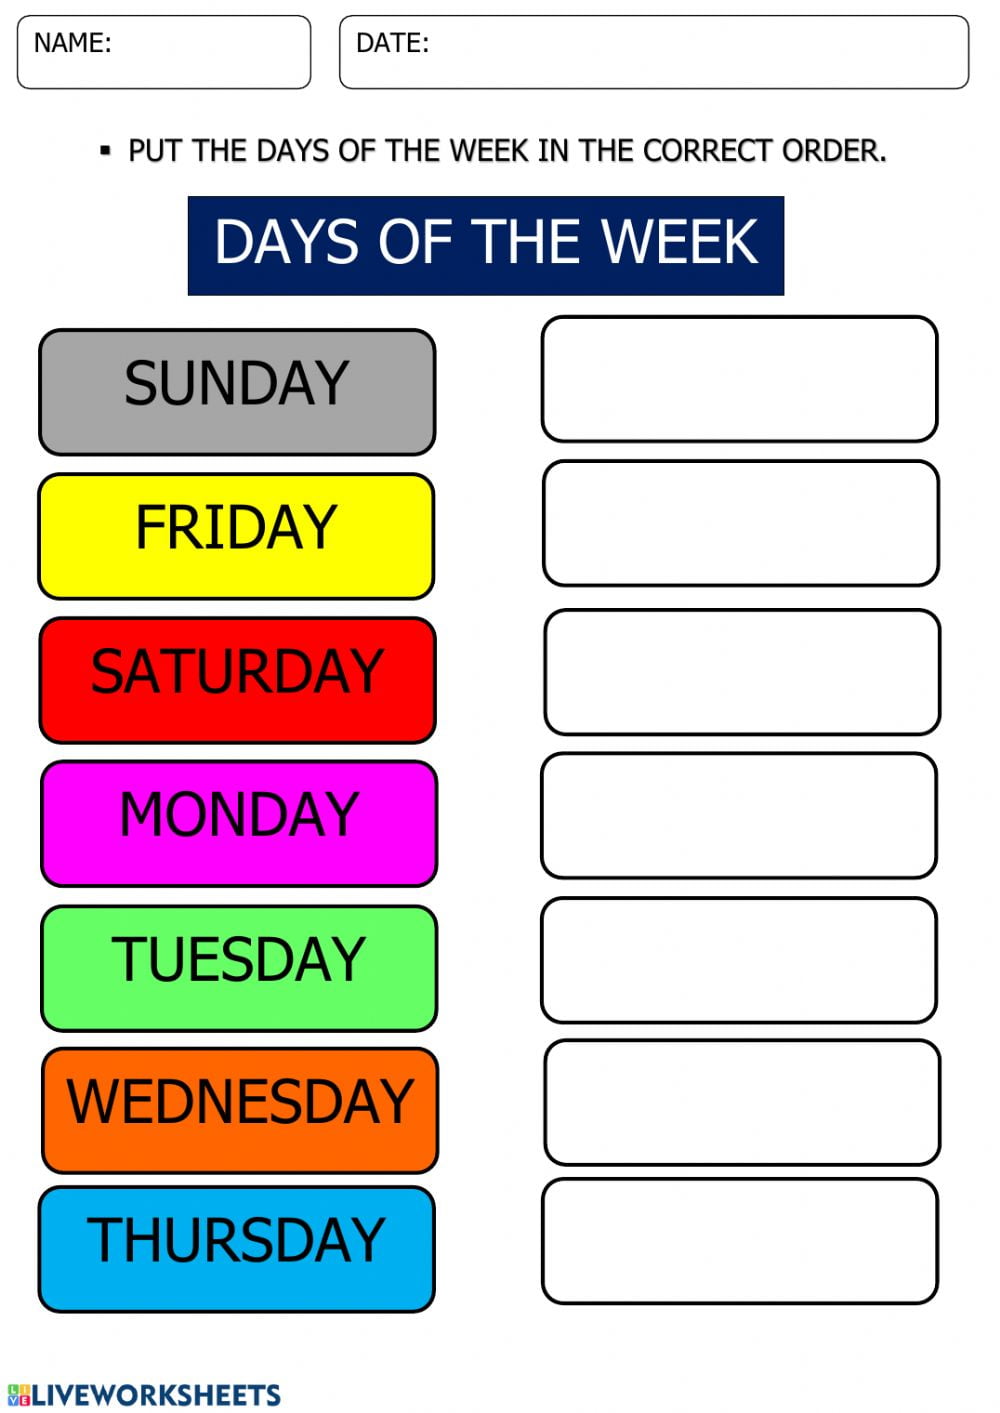 days-of-the-week-online-pdf-worksheet-free-printable